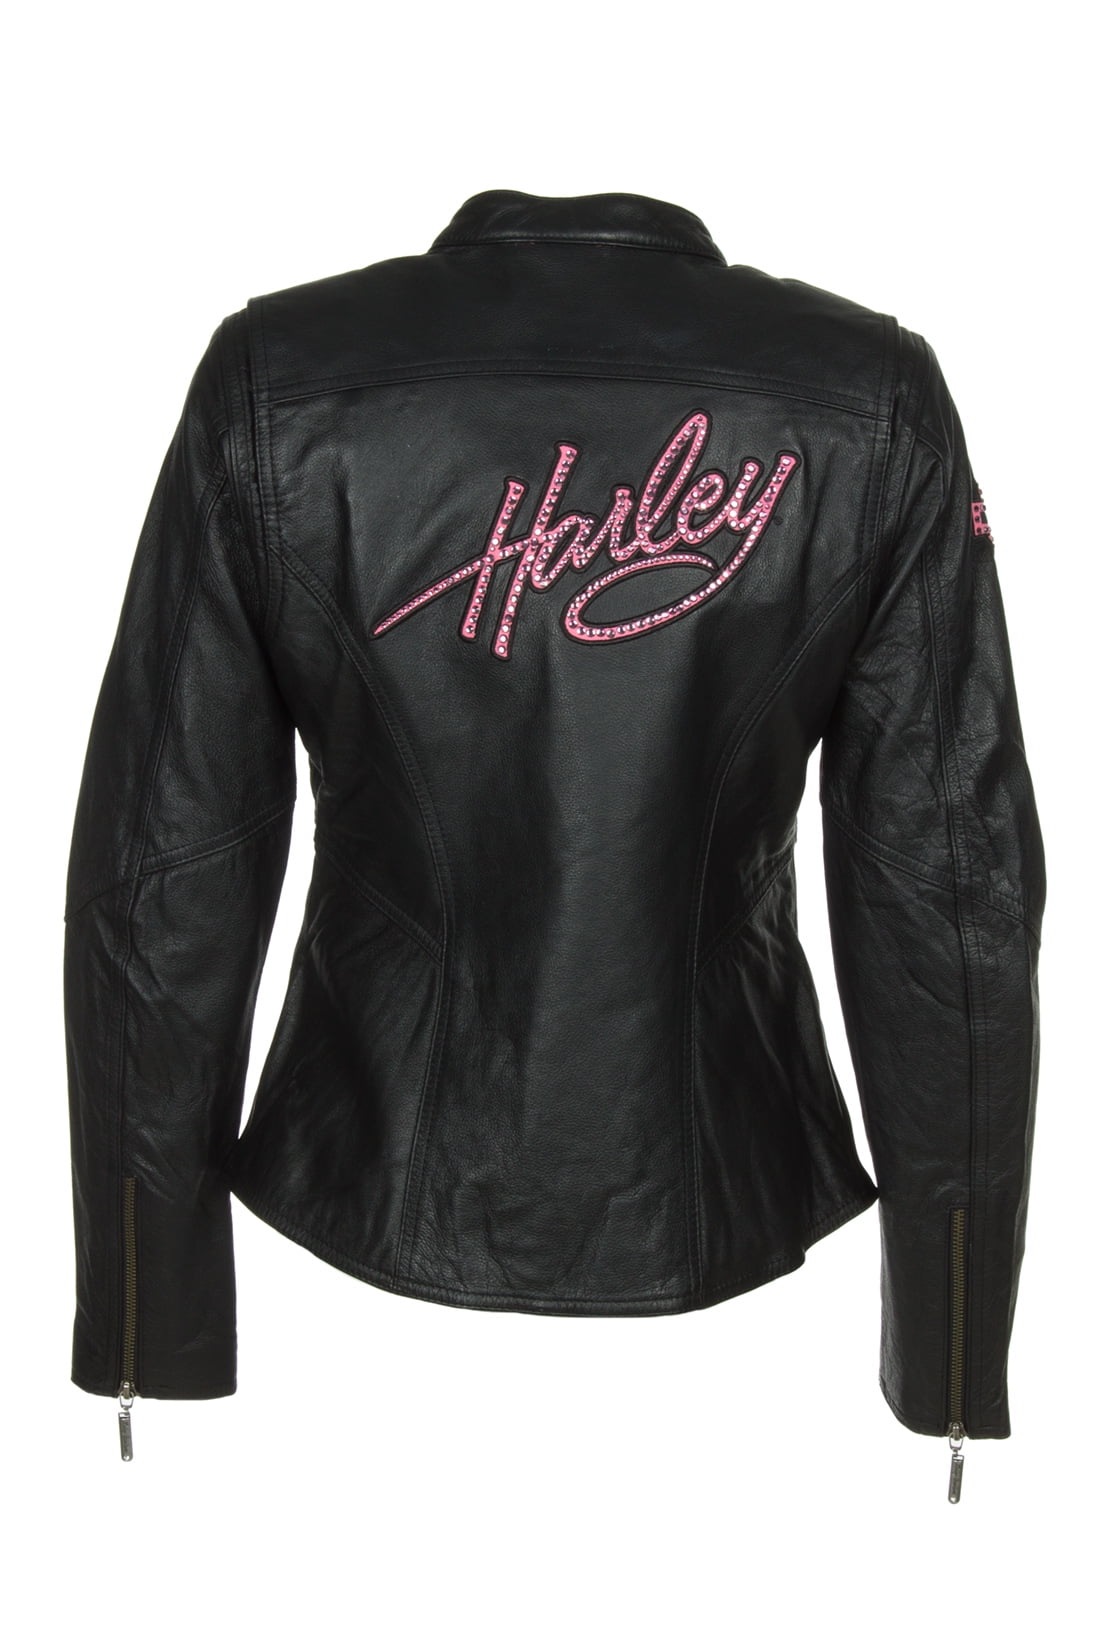 Harley Davidson 98022 12vw Women S Jacket Pink Label Embellished Black Leather Walmart Com